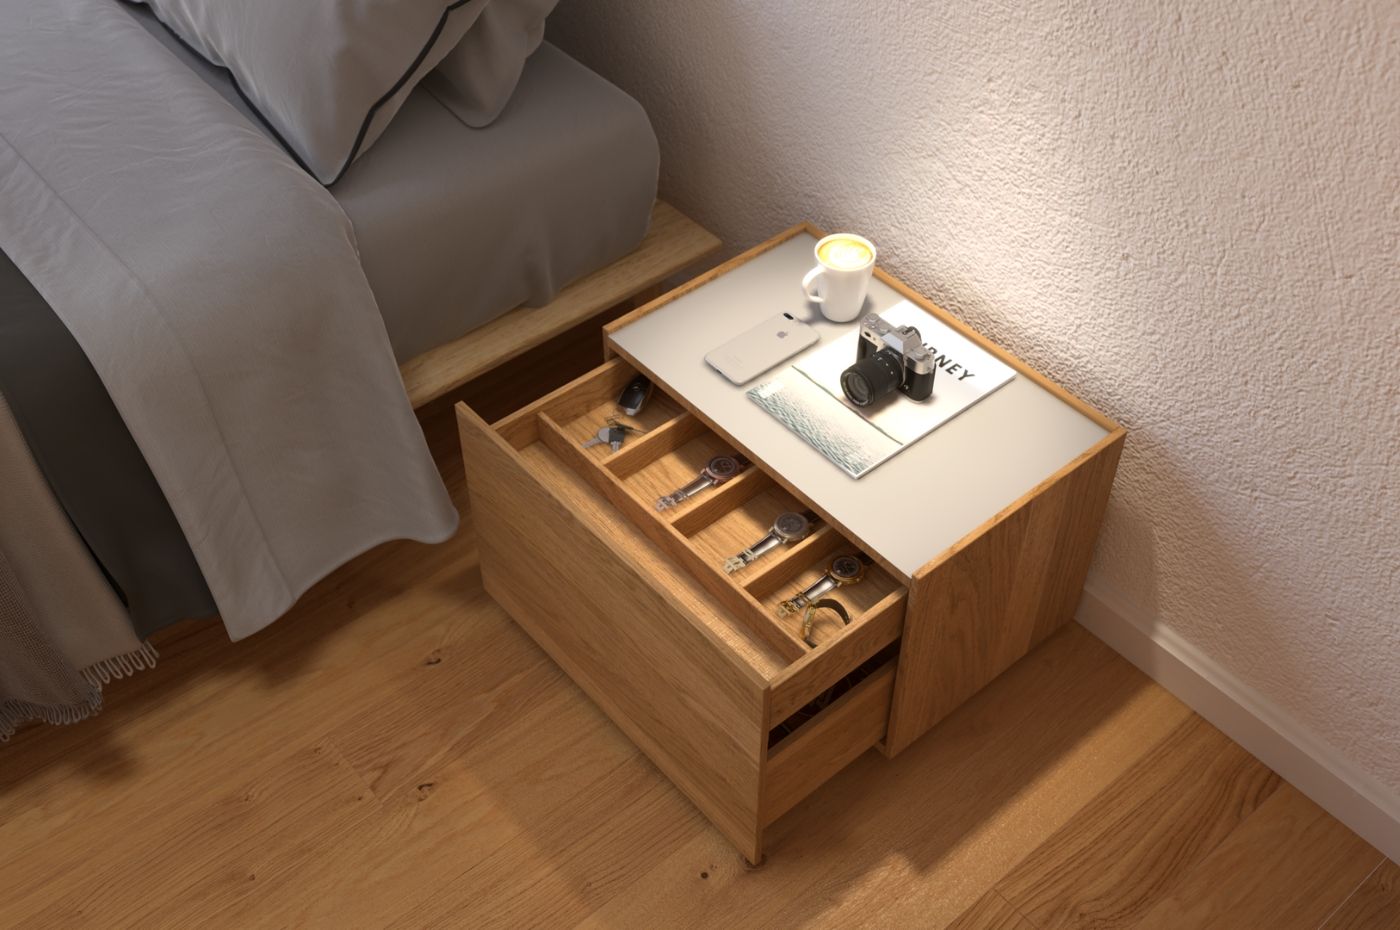 10 thiết kế tủ đầu giường gỗ độc đáo bạn chưa hề nghĩ tới